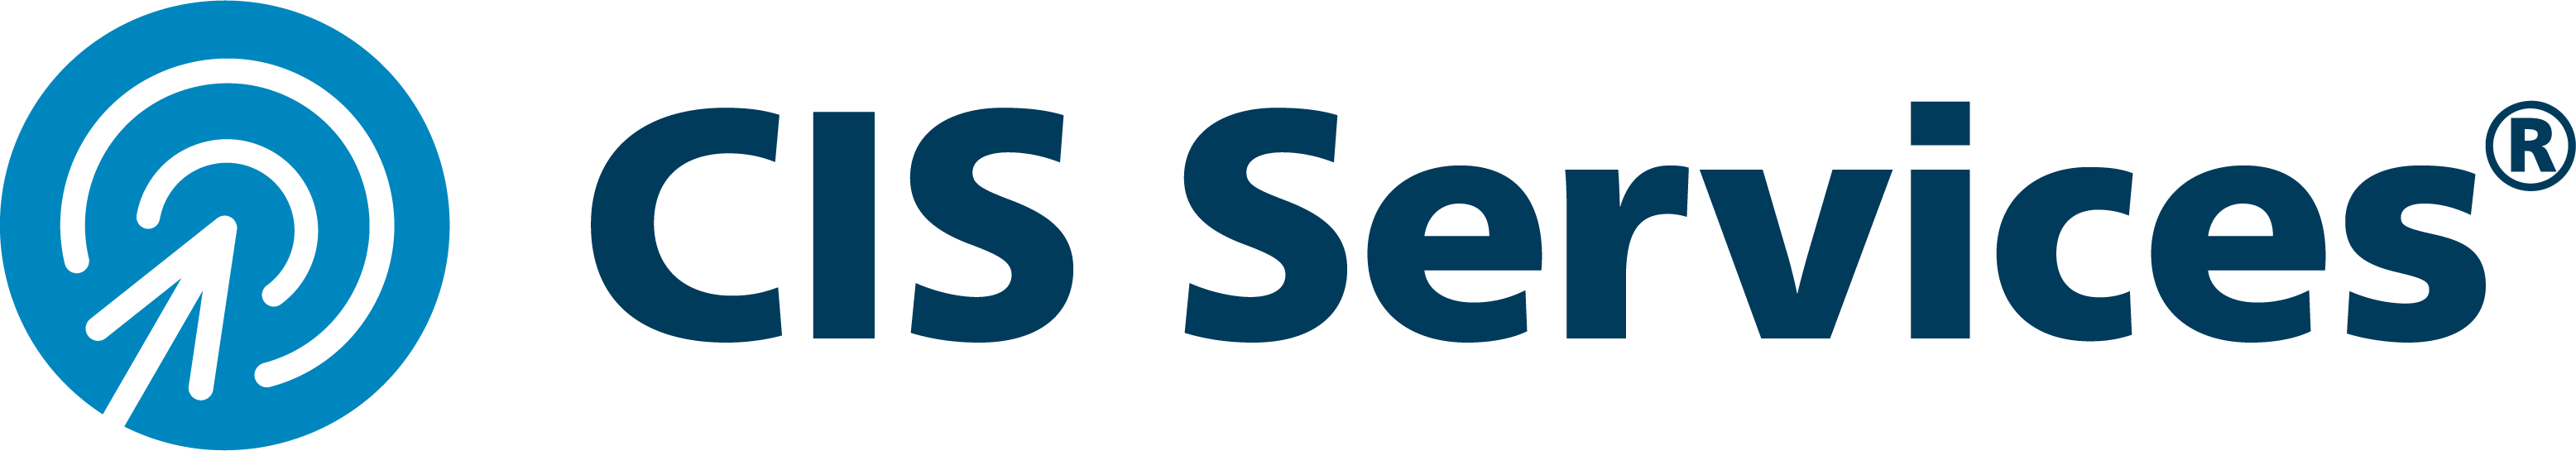 CIS Services logo